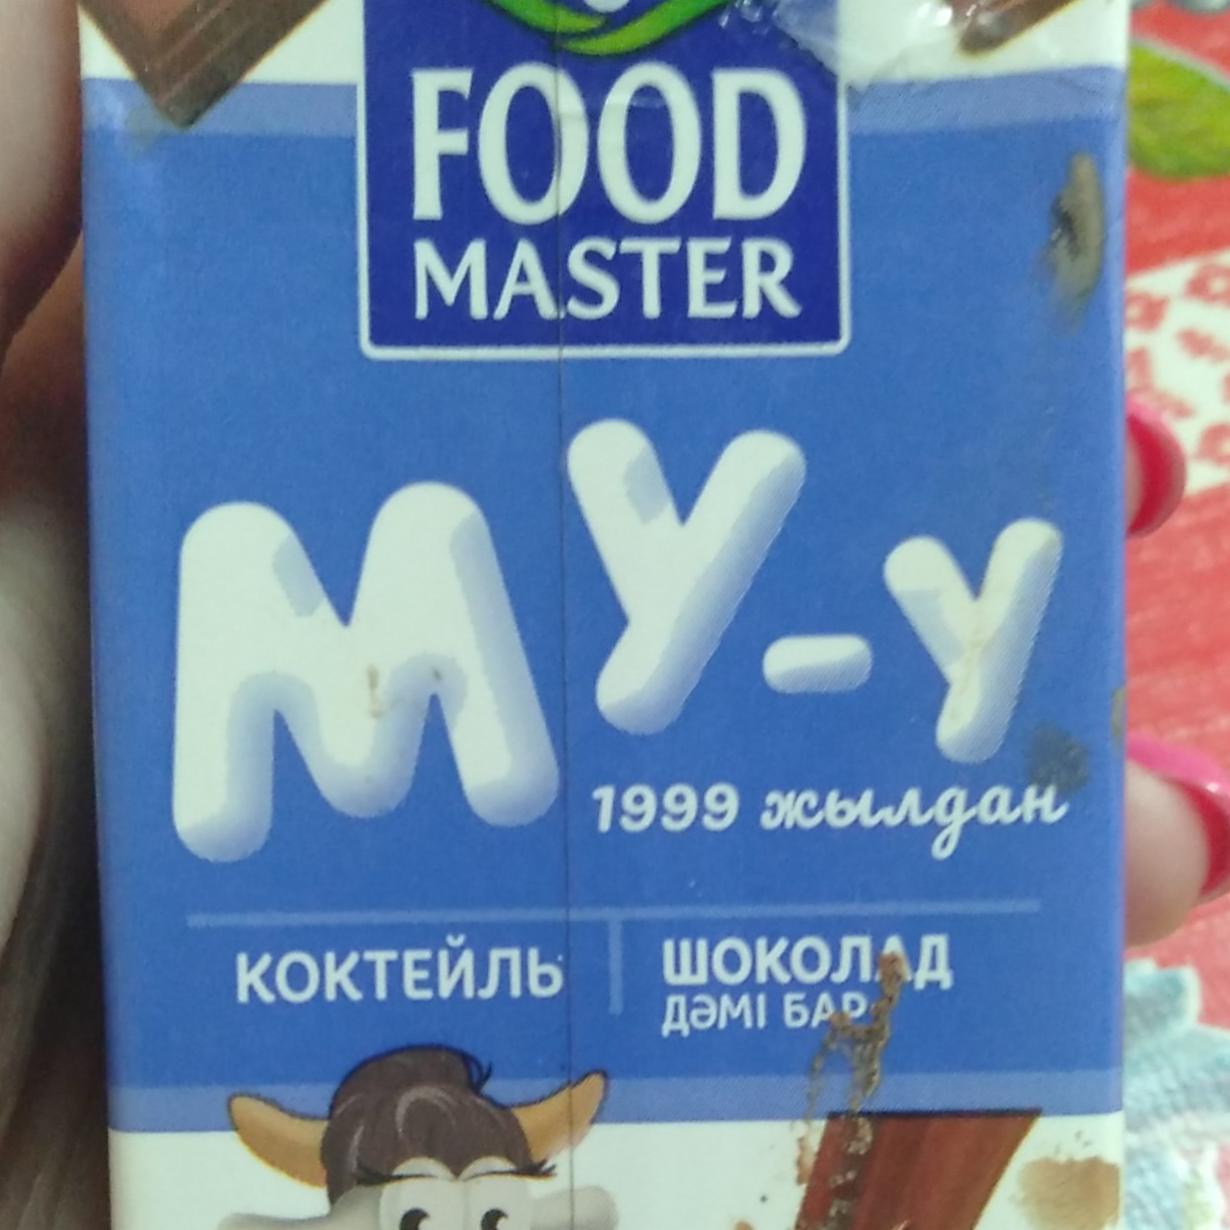 Фото - шоколадное молоко му-у FOOD Master